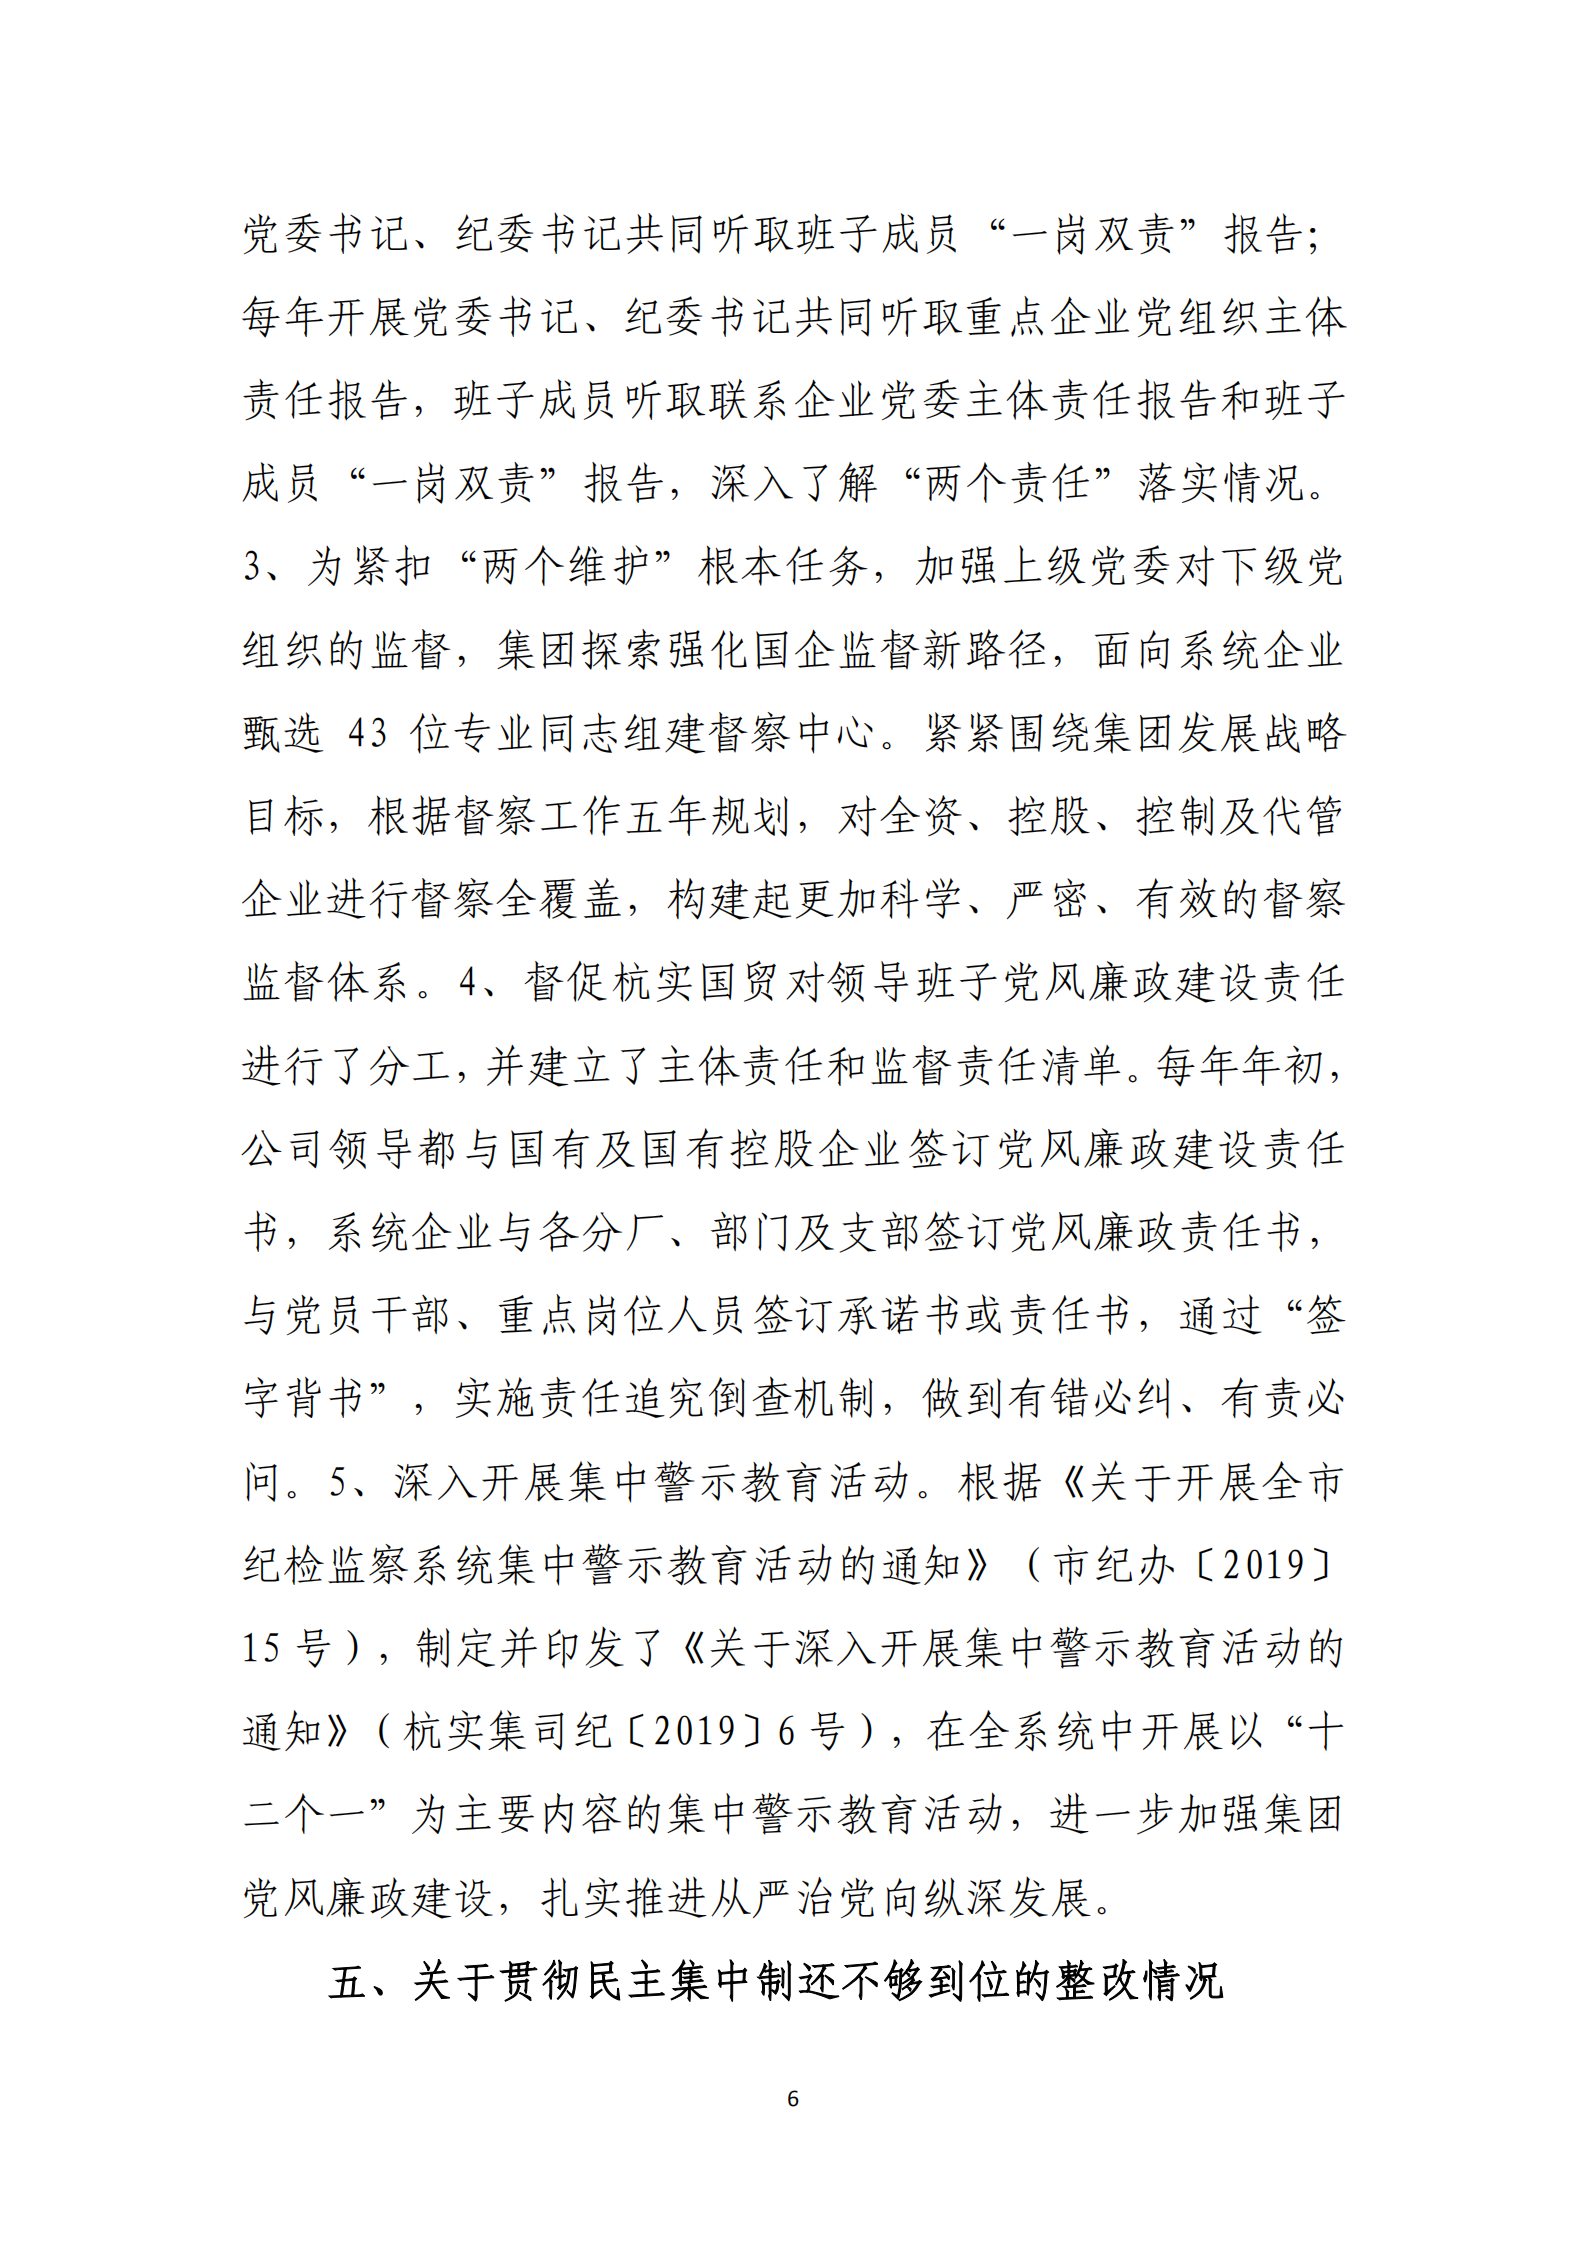 大阳城集团娱乐游戏党委关于巡察整改情况的通报_05.png